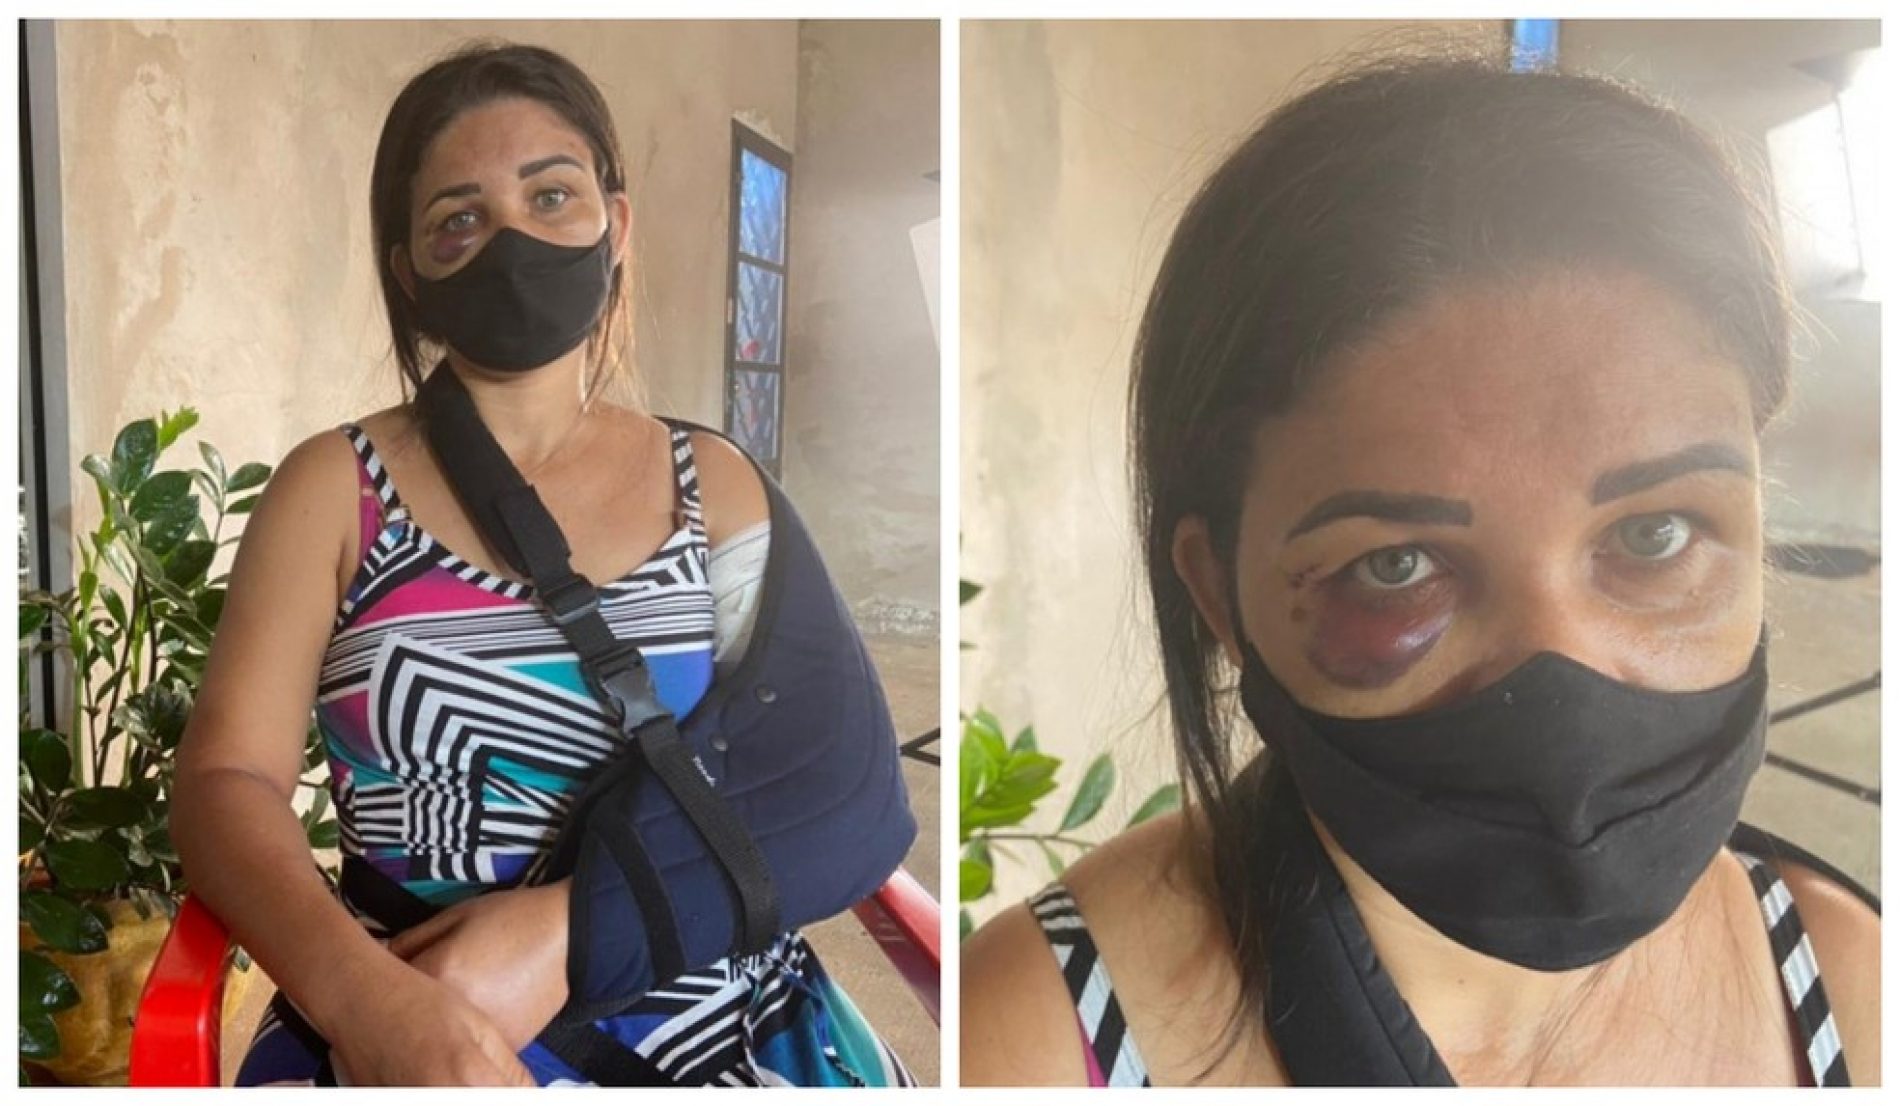 PALMARES PAULISTA: Funcionária de padaria tem braço quebrado por cliente após pedir para homem usar máscara